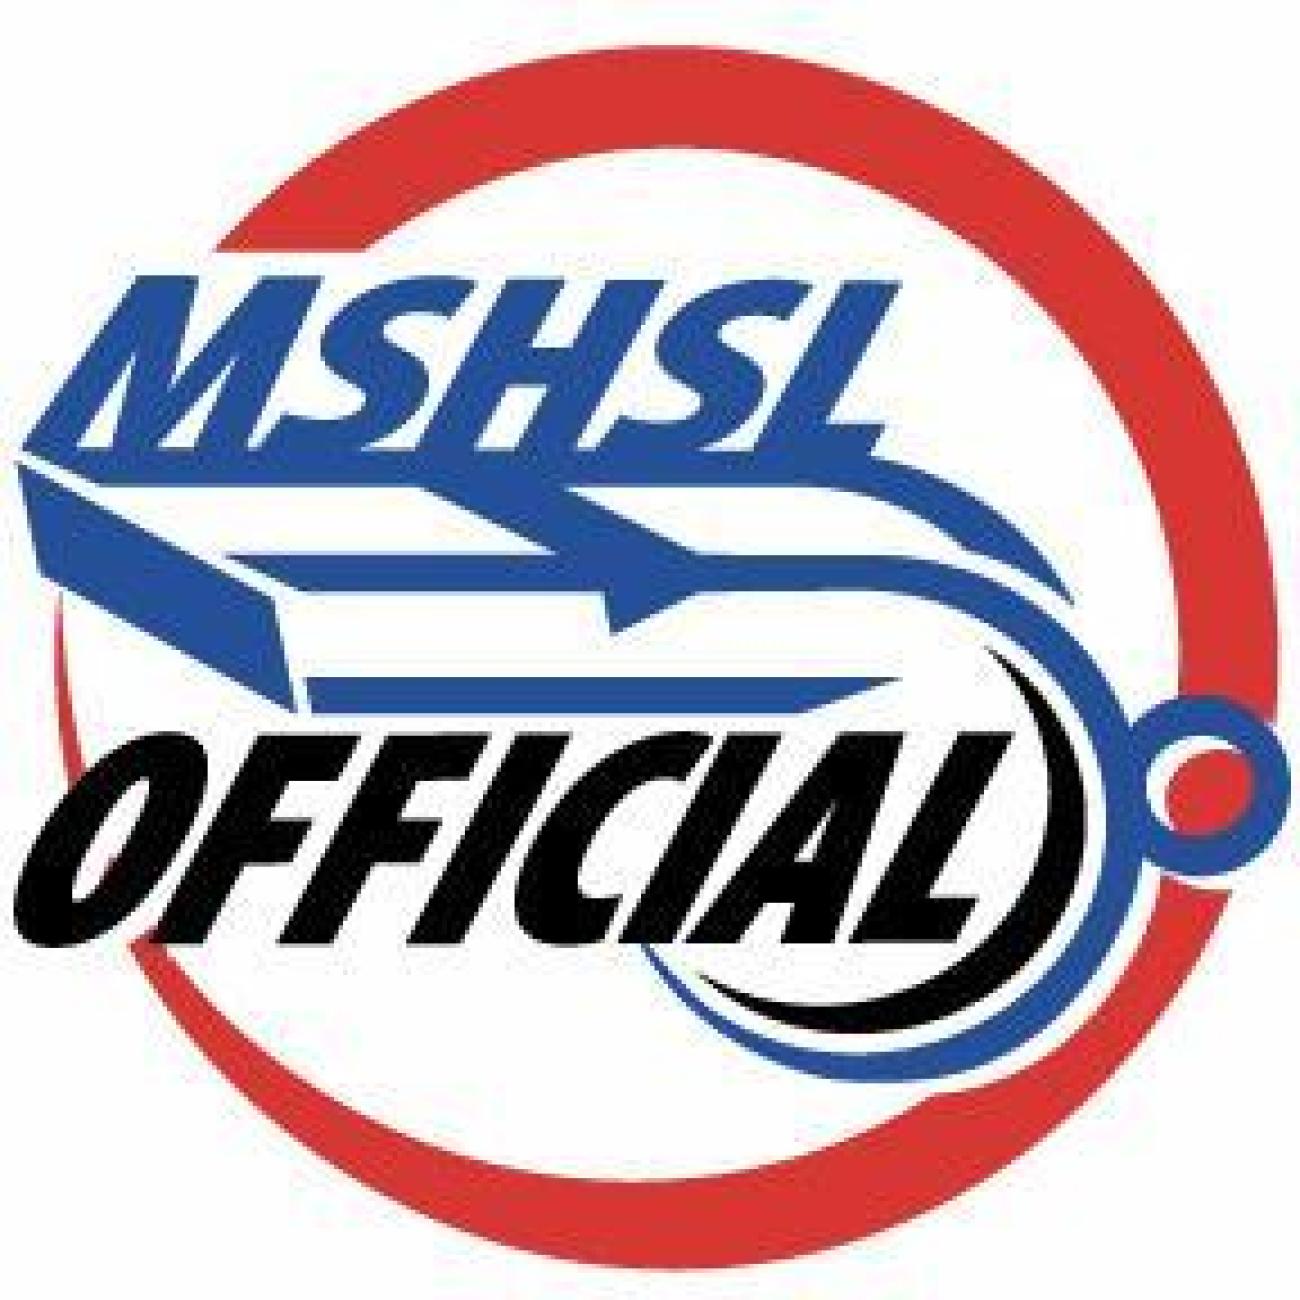 MSHSL Officials Logo